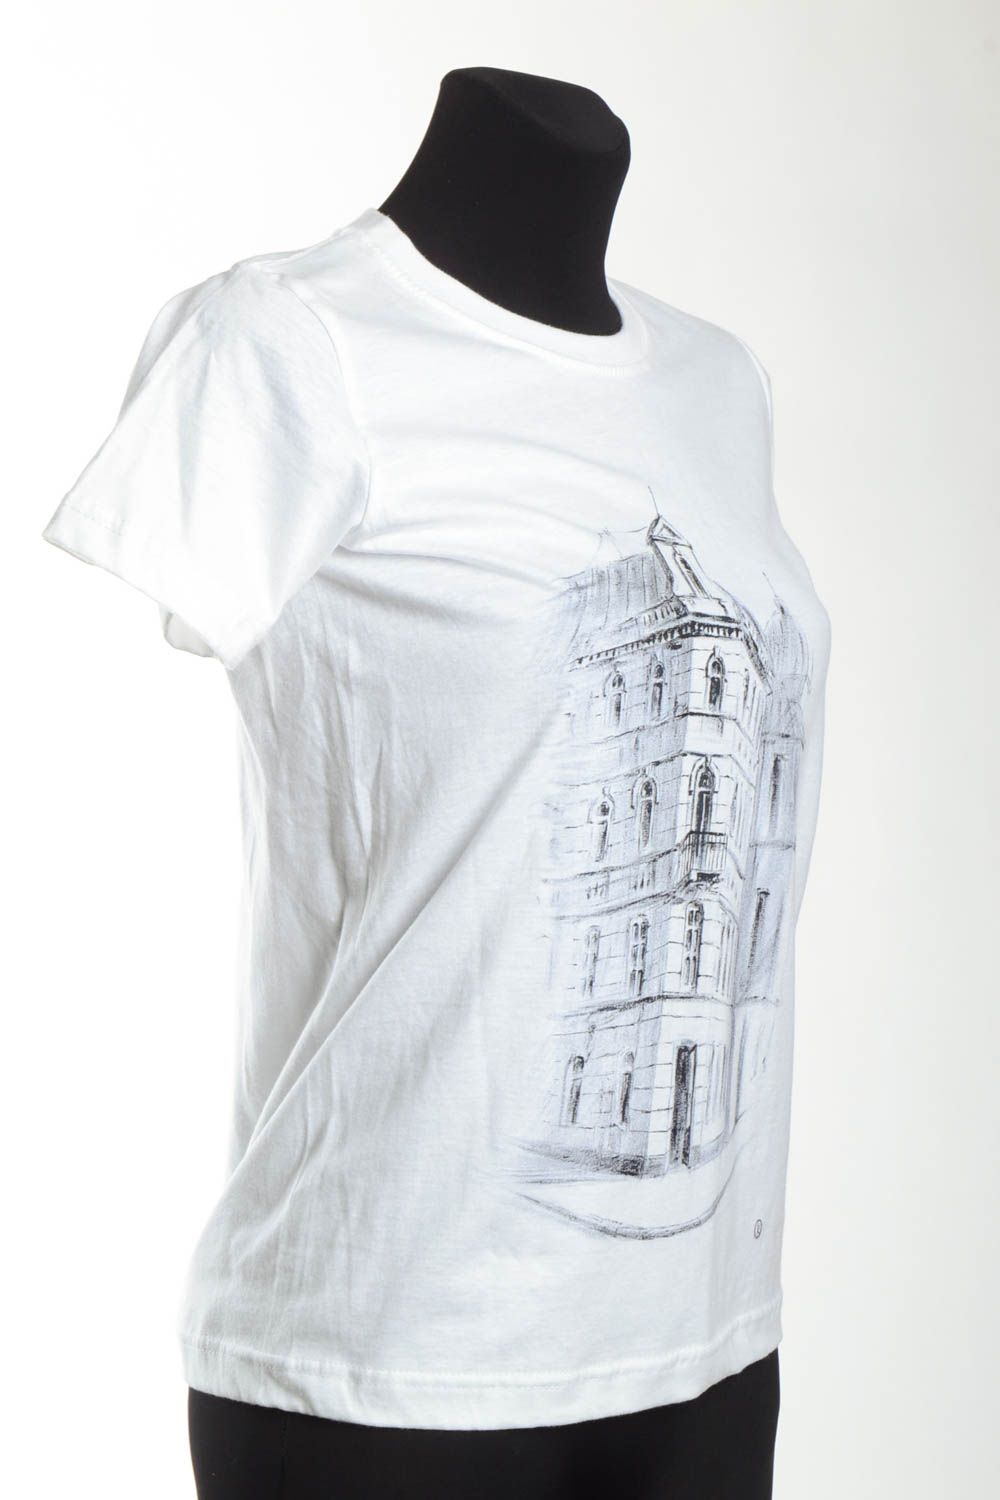 Белая футболка ручной работы женская одежда футболка с рисунком авторским фото 4